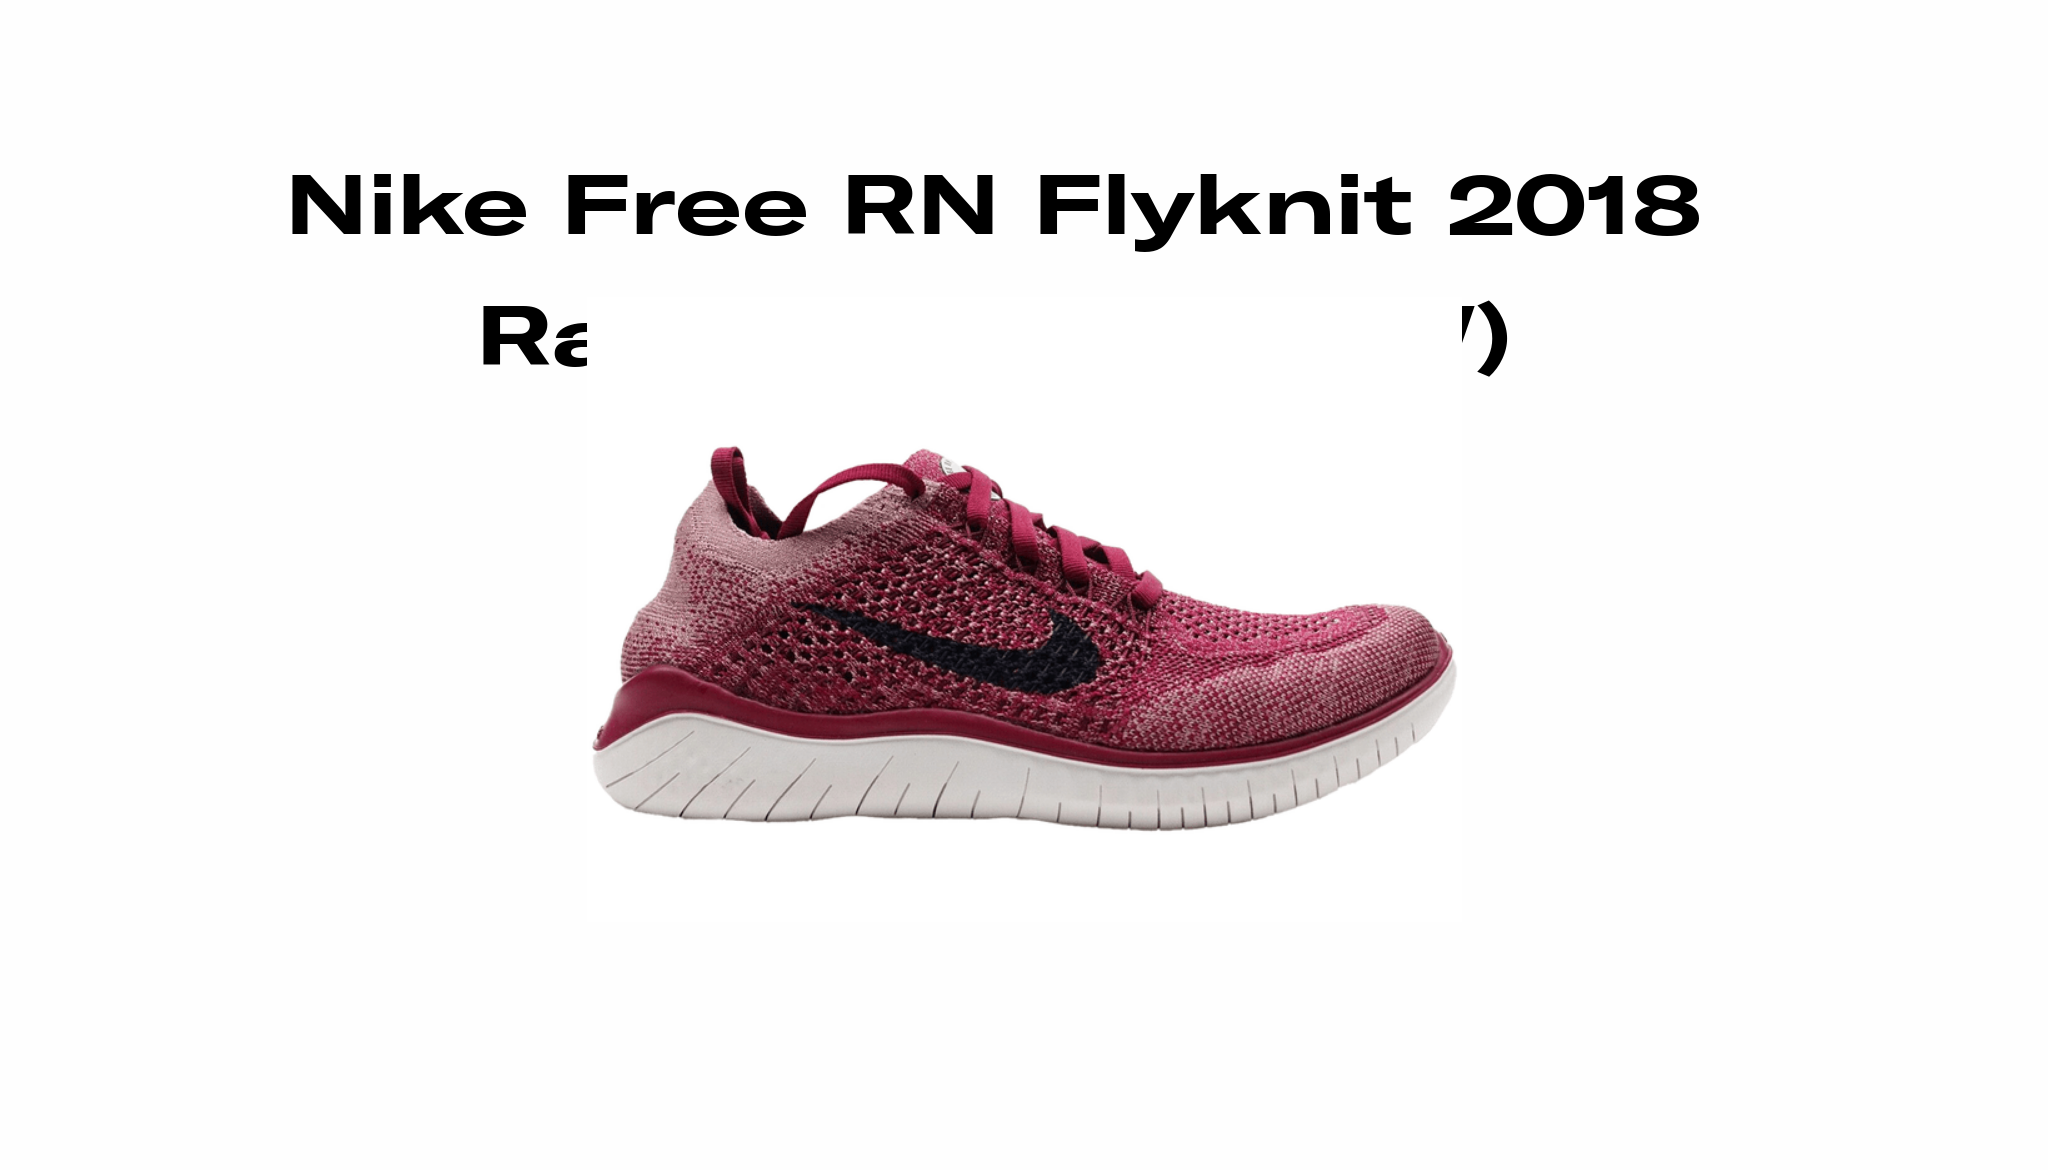 Nike Free RN Flyknit 2018 Red Raffles Release Date Sole Retriever